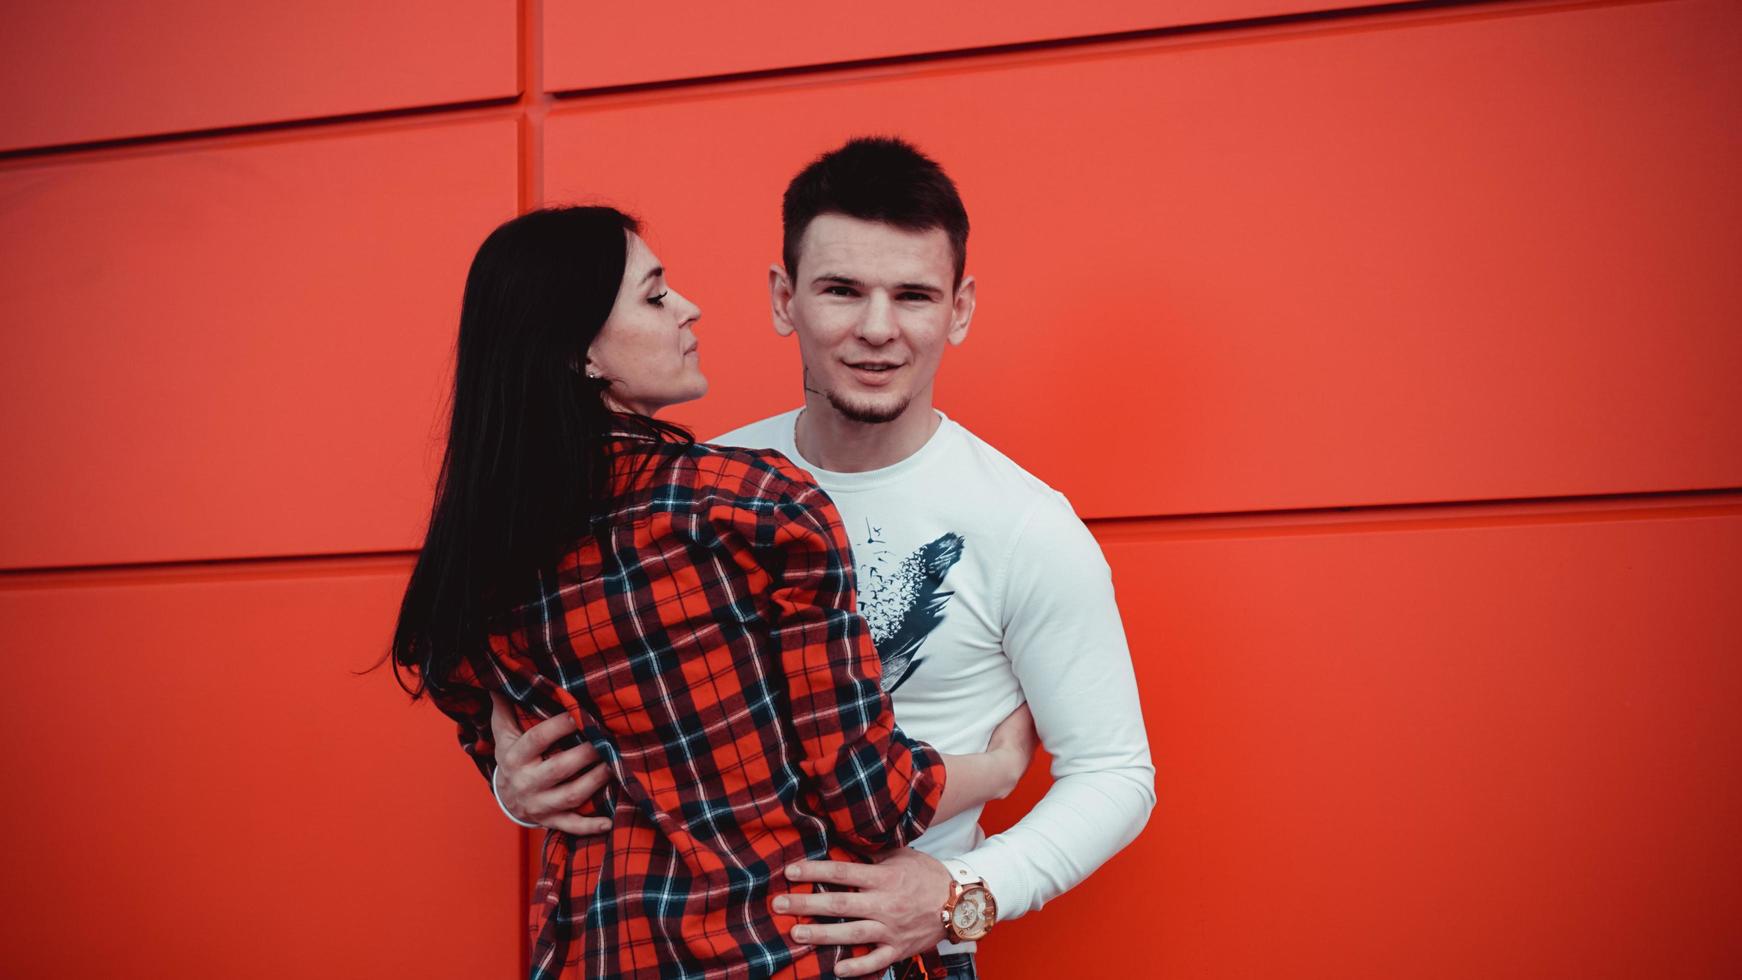 paar daten en verliefd knuffelen op een zonnige dag - rode achtergrond foto